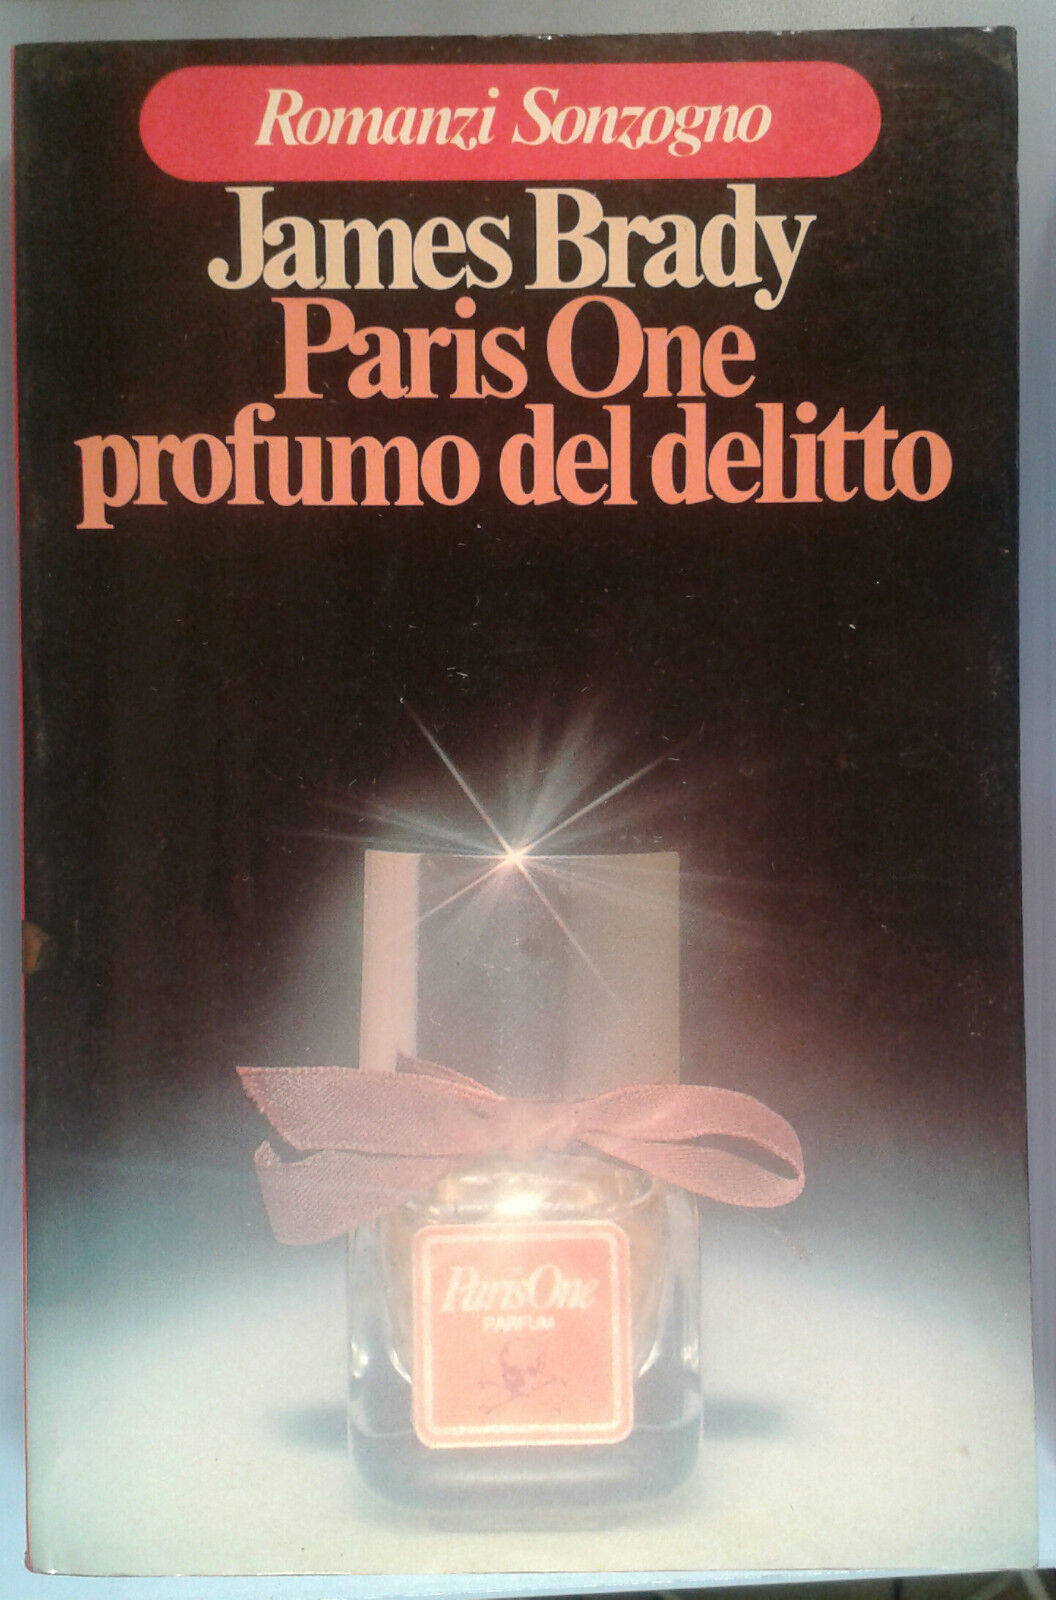 Paris One profumo del delitto - James Brady - SONZOGNO -  1979 - M